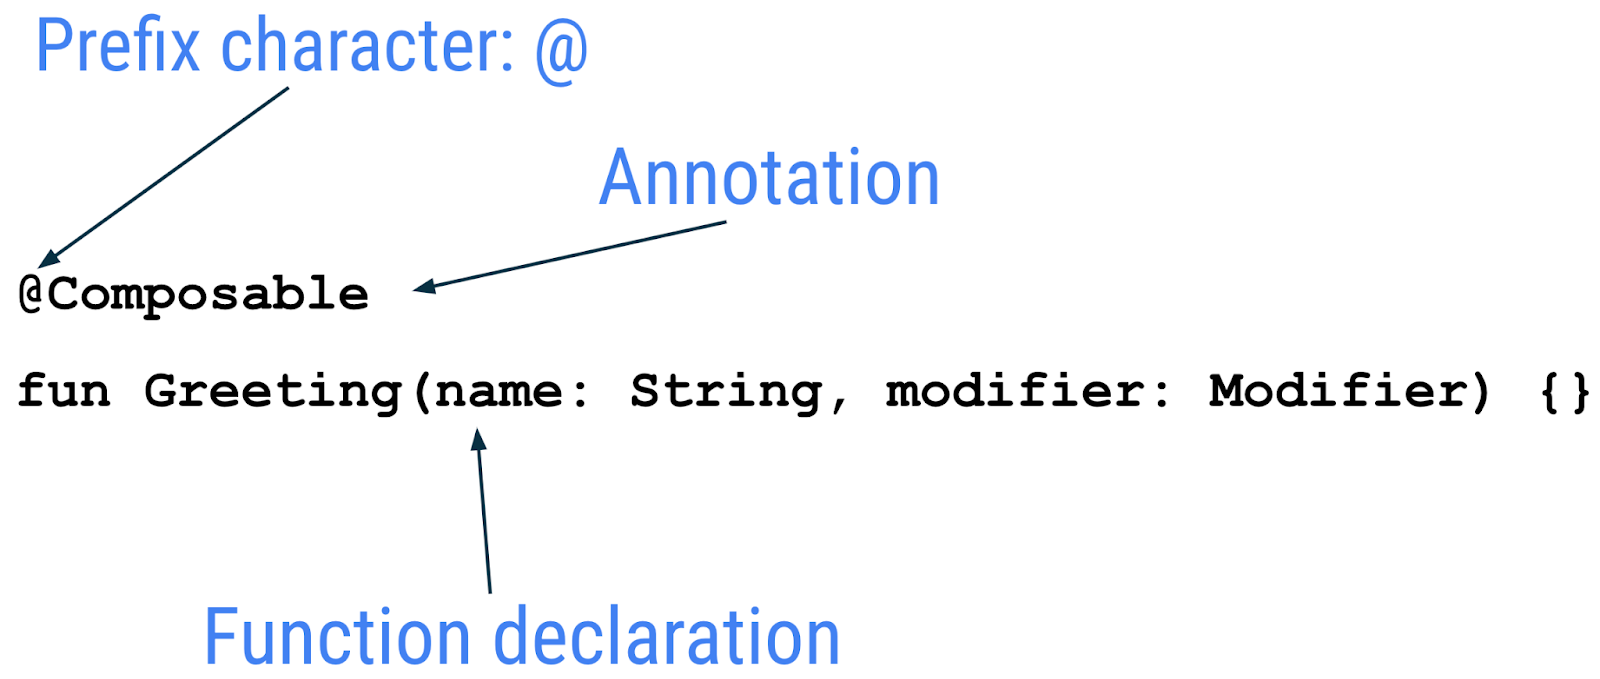 Diagrama que muestra la anatomía de una función de componibilidad en la que la anotación con el carácter de prefijo @ es componible seguido de la declaración de la función.